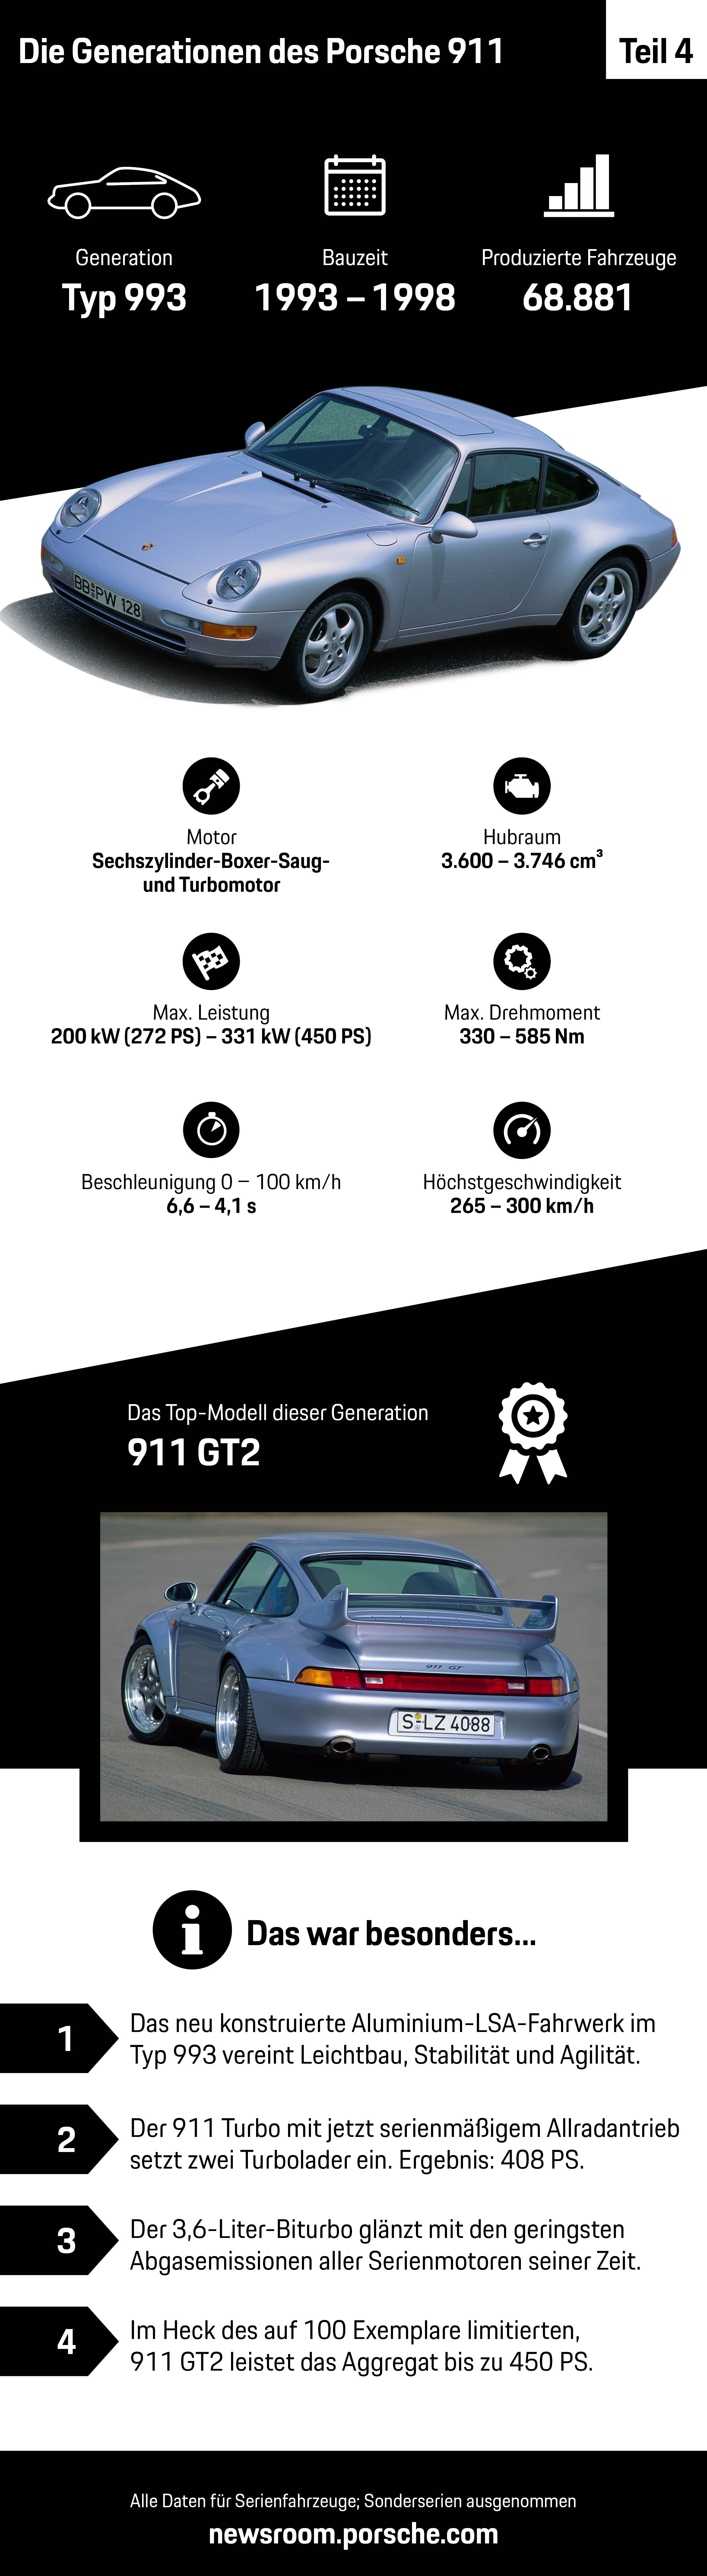 Die Generationen des Porsche 911 – Teil 4, Infografik, 2018, Porsche AG